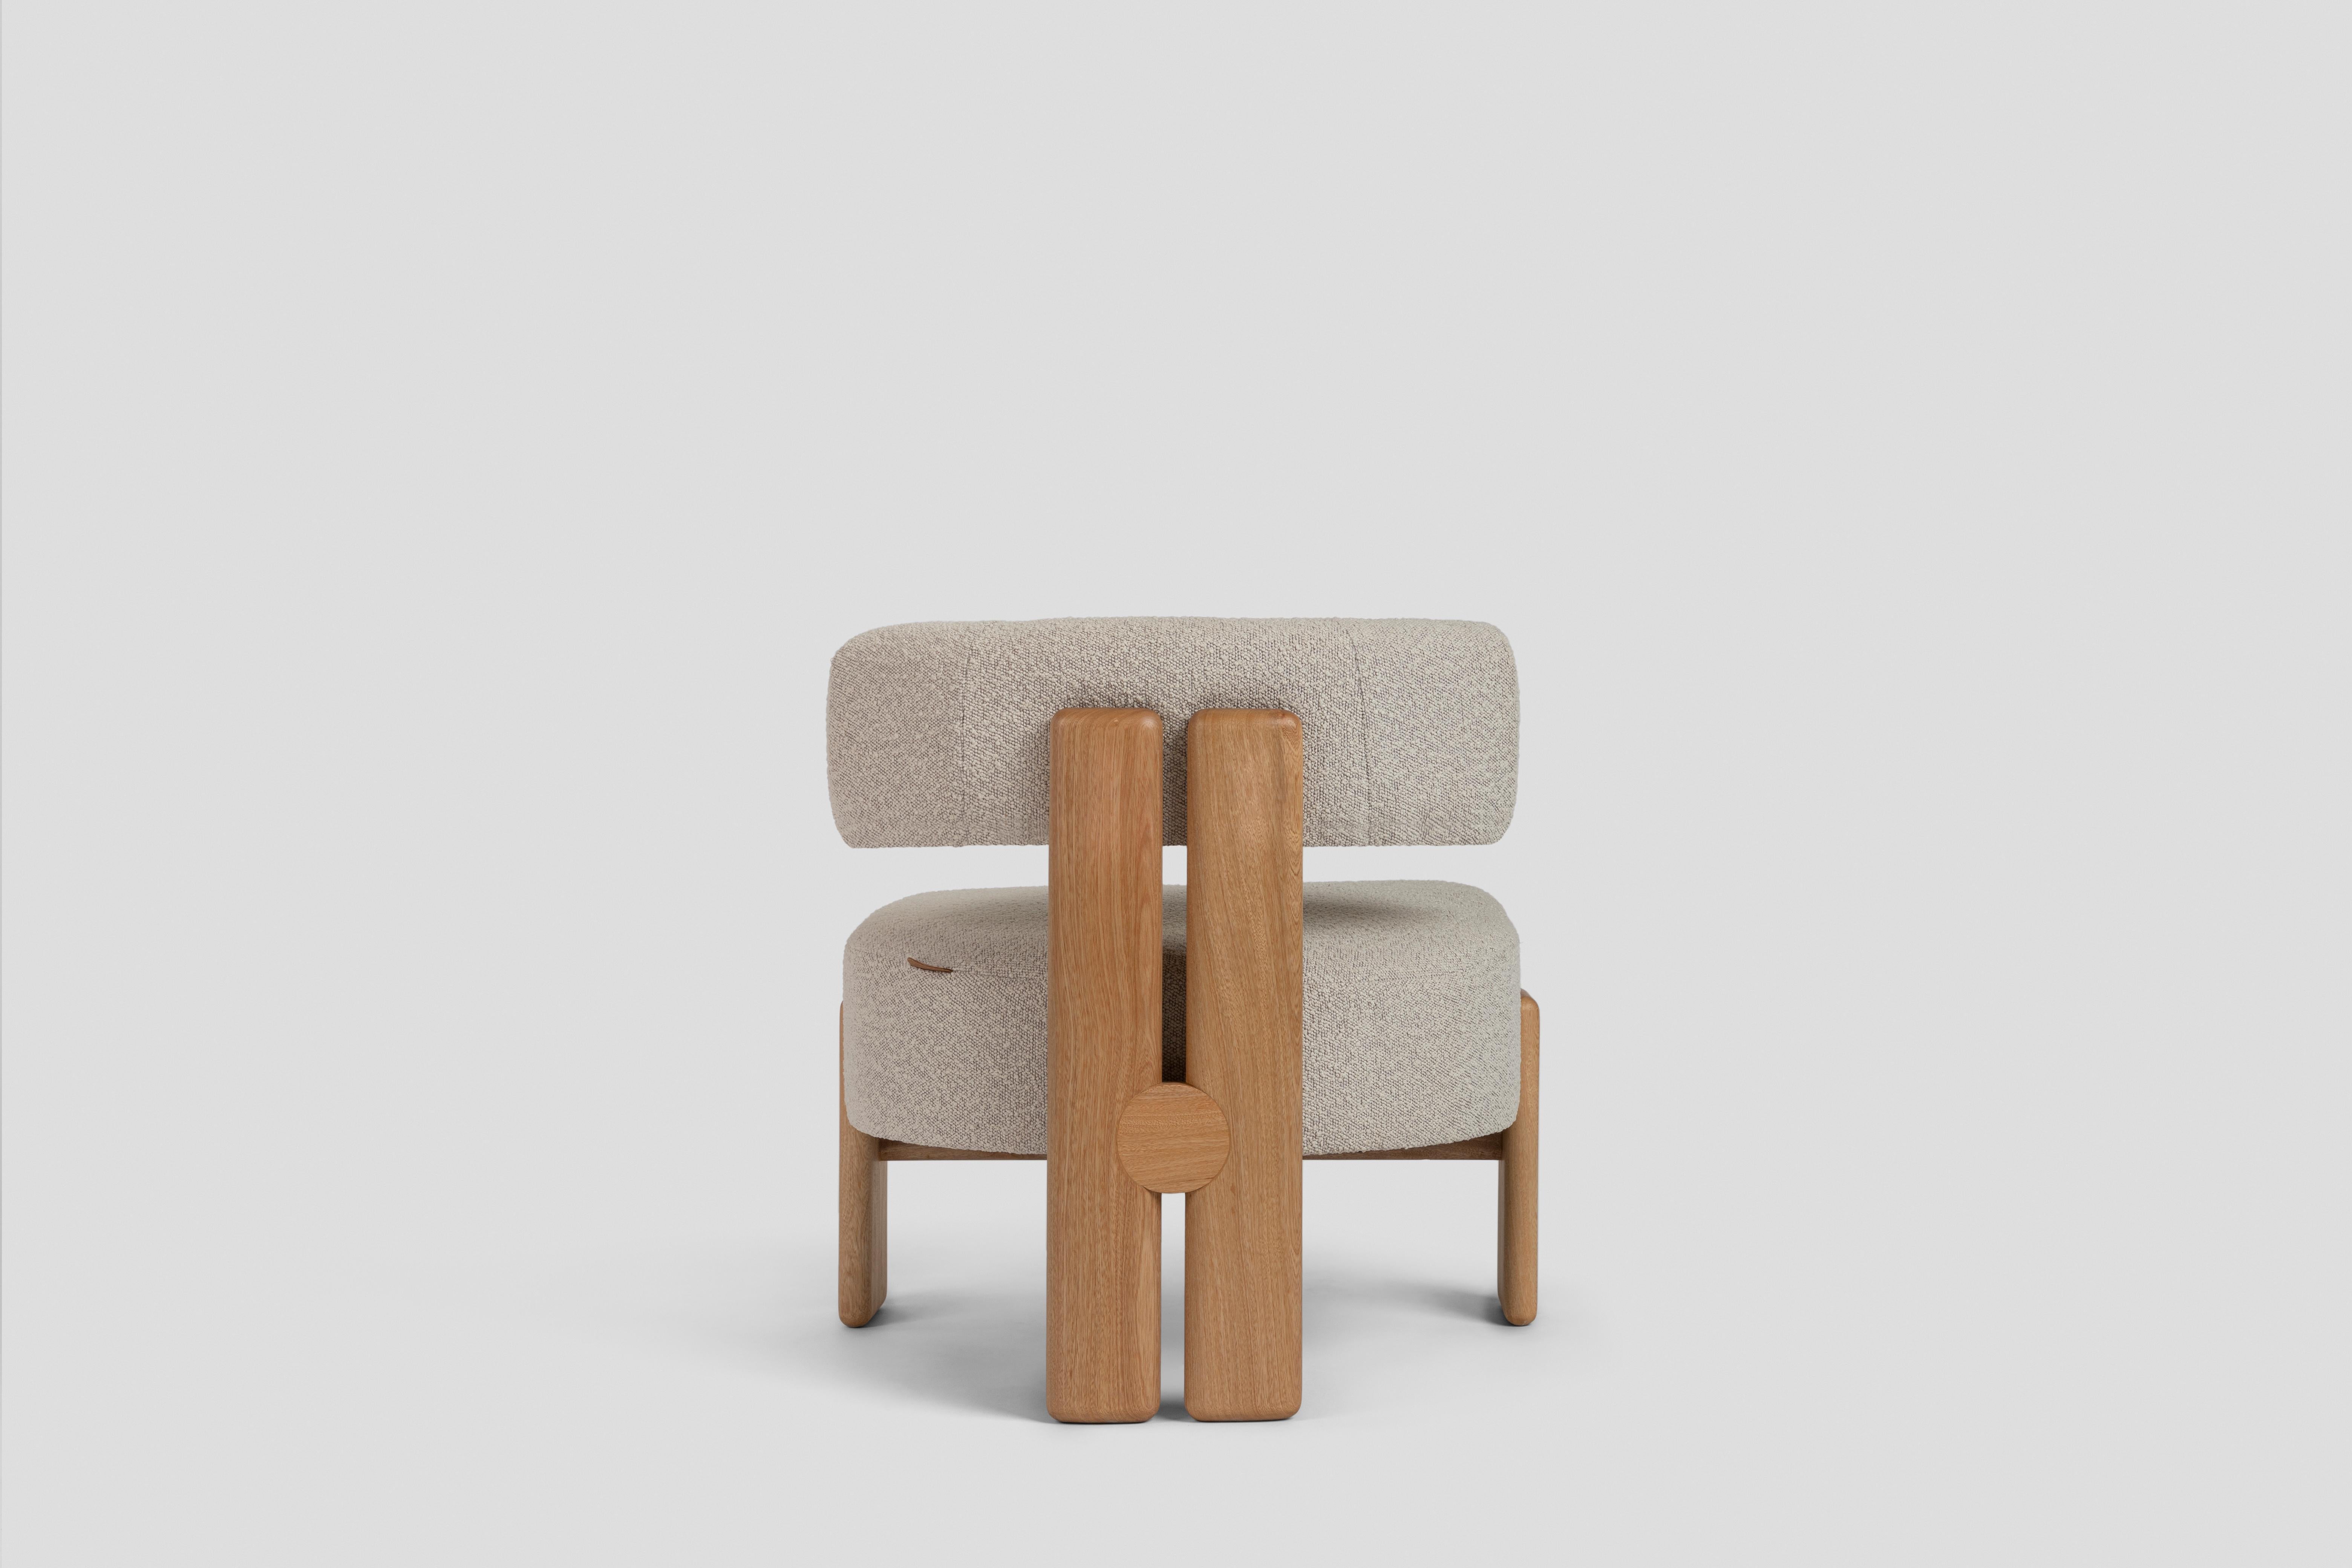 Inspiriert von dreibeinigen Stühlen, hat dieser niedrige Stuhl ein Rückenbein, das aus zwei Teilen besteht, die durch ein rundes Holzdetail verbunden sind, und zwei Seitenbeine, die die Sitzfläche umschließen. Er ist als Ergänzung in einem